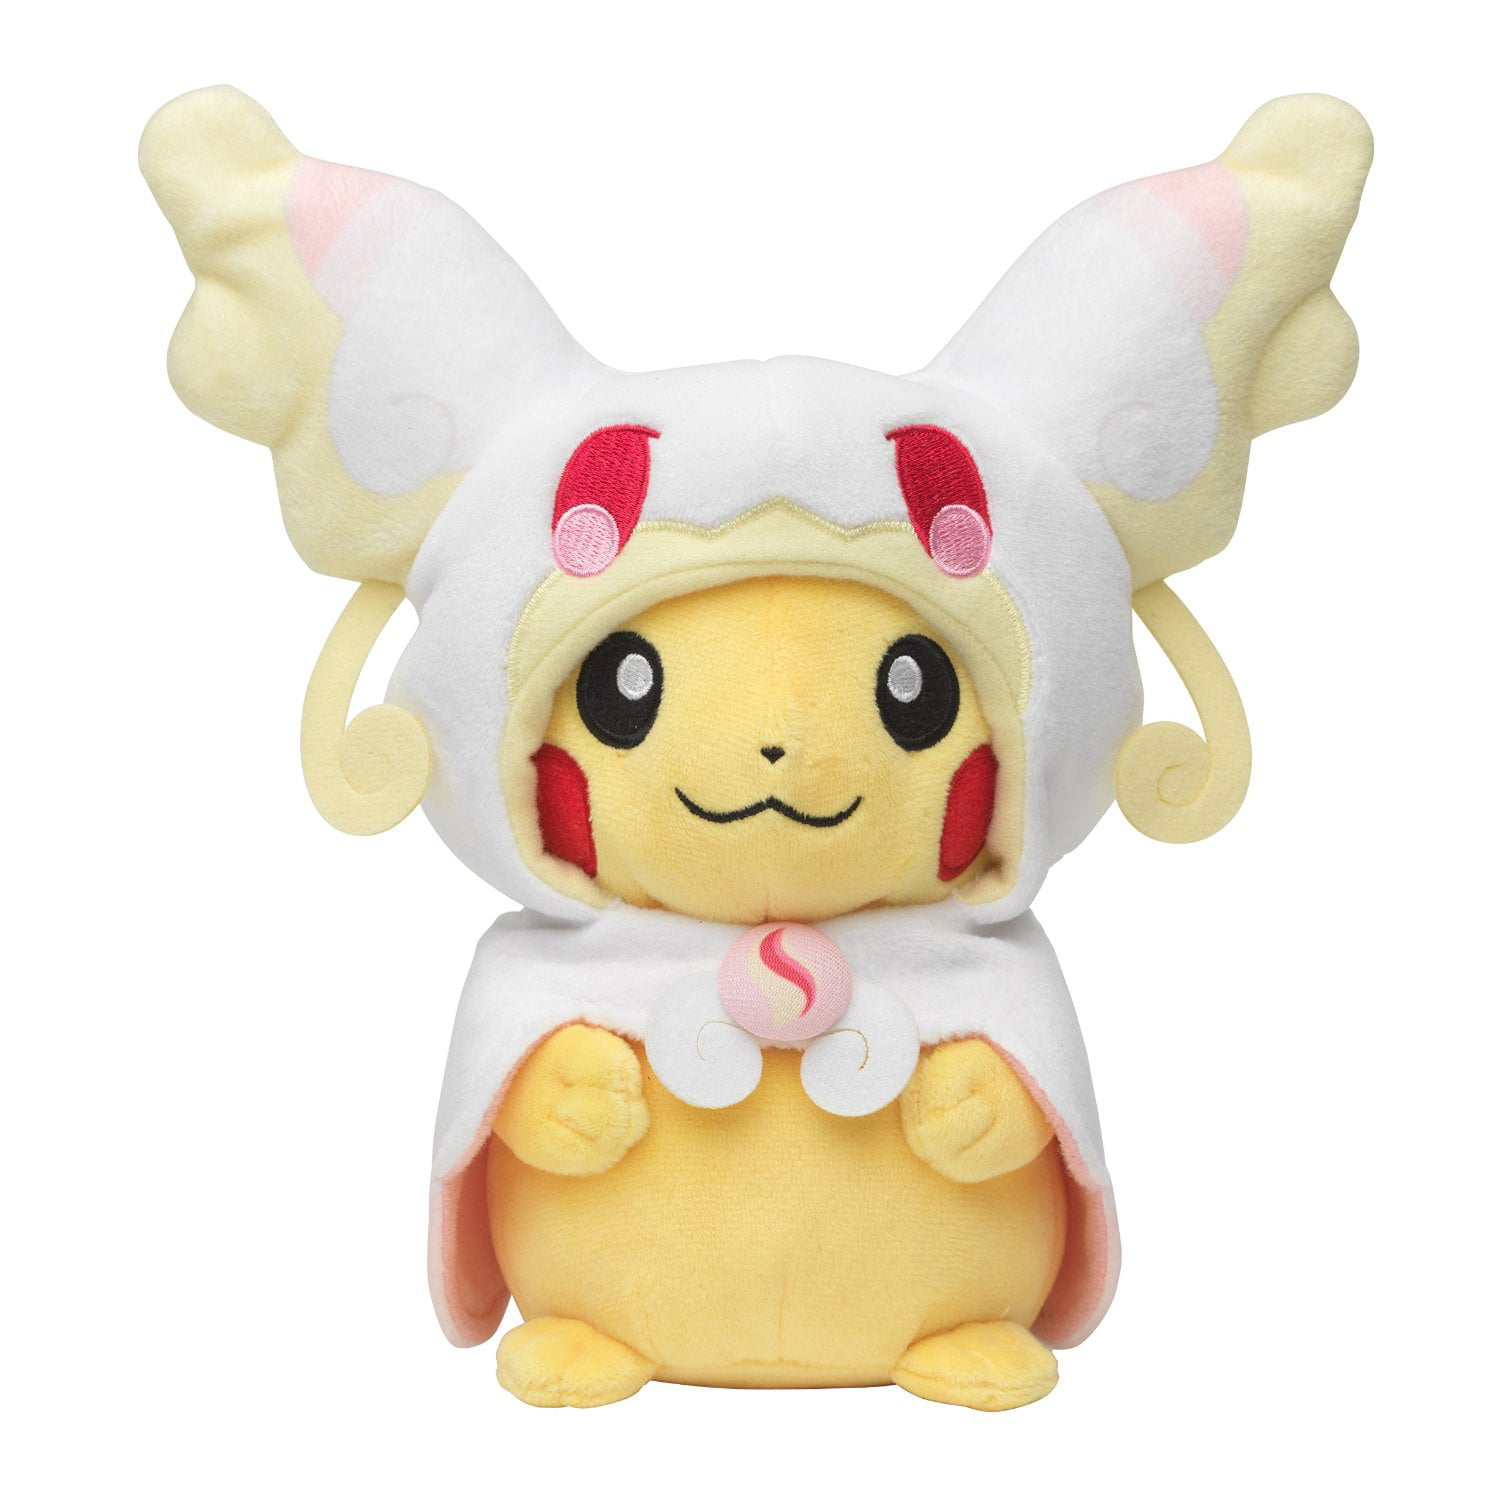 New Smile Pokemon Center Pikachu Mega Lucario Poncho Plush Toy Soft Doll 8" 